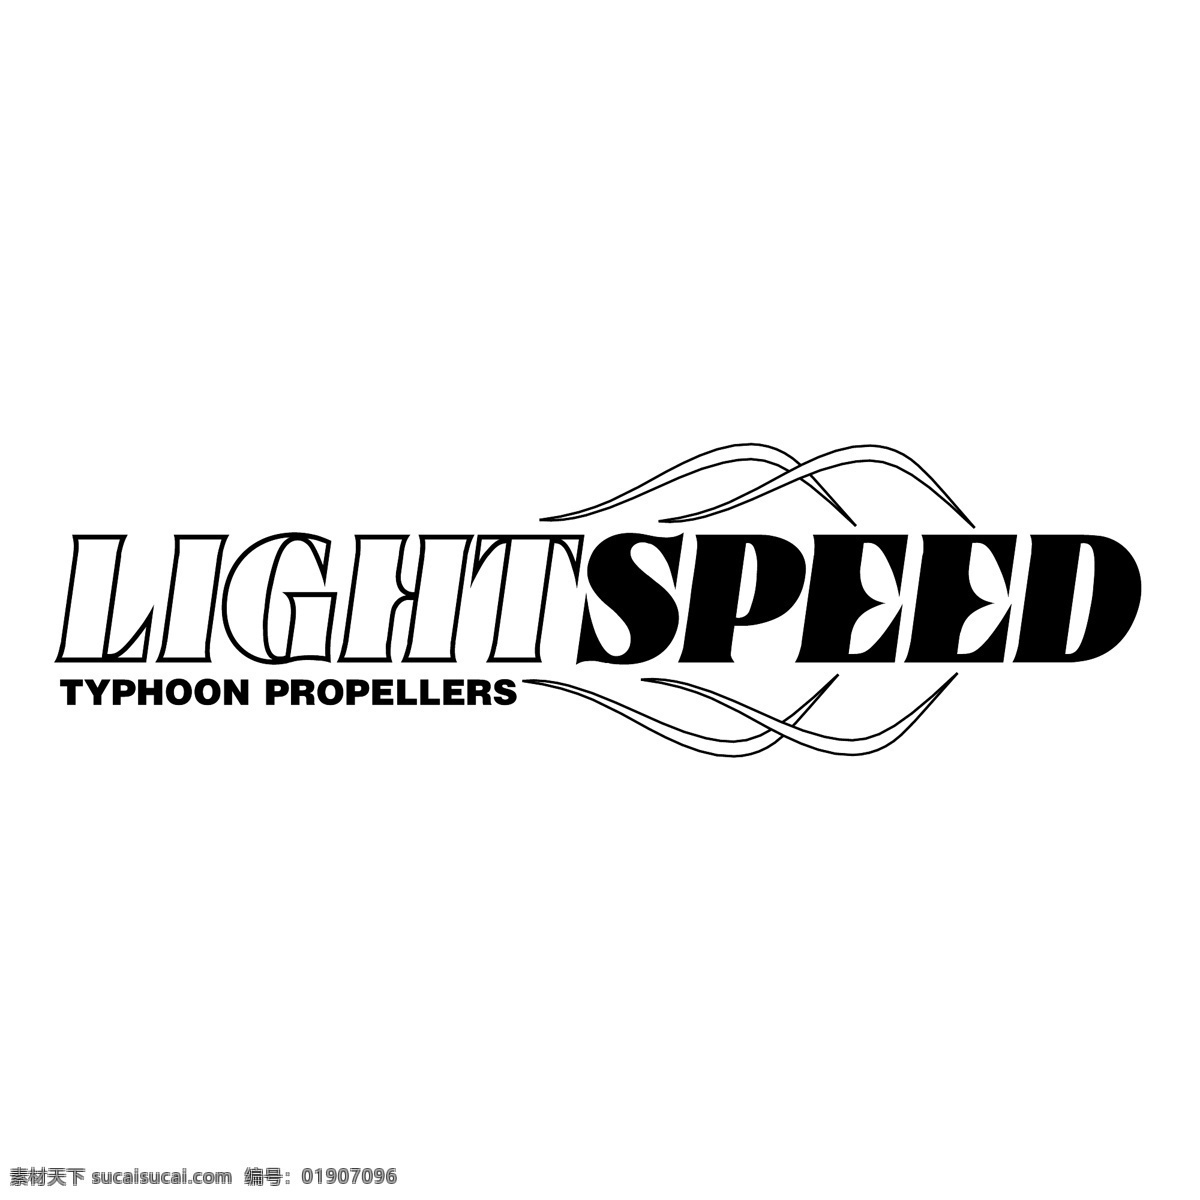 光 速度 光的速度 赛马 矢量 赛车 光的速度赛马 快速 背景 速度矢量光线 矢量图 建筑家居